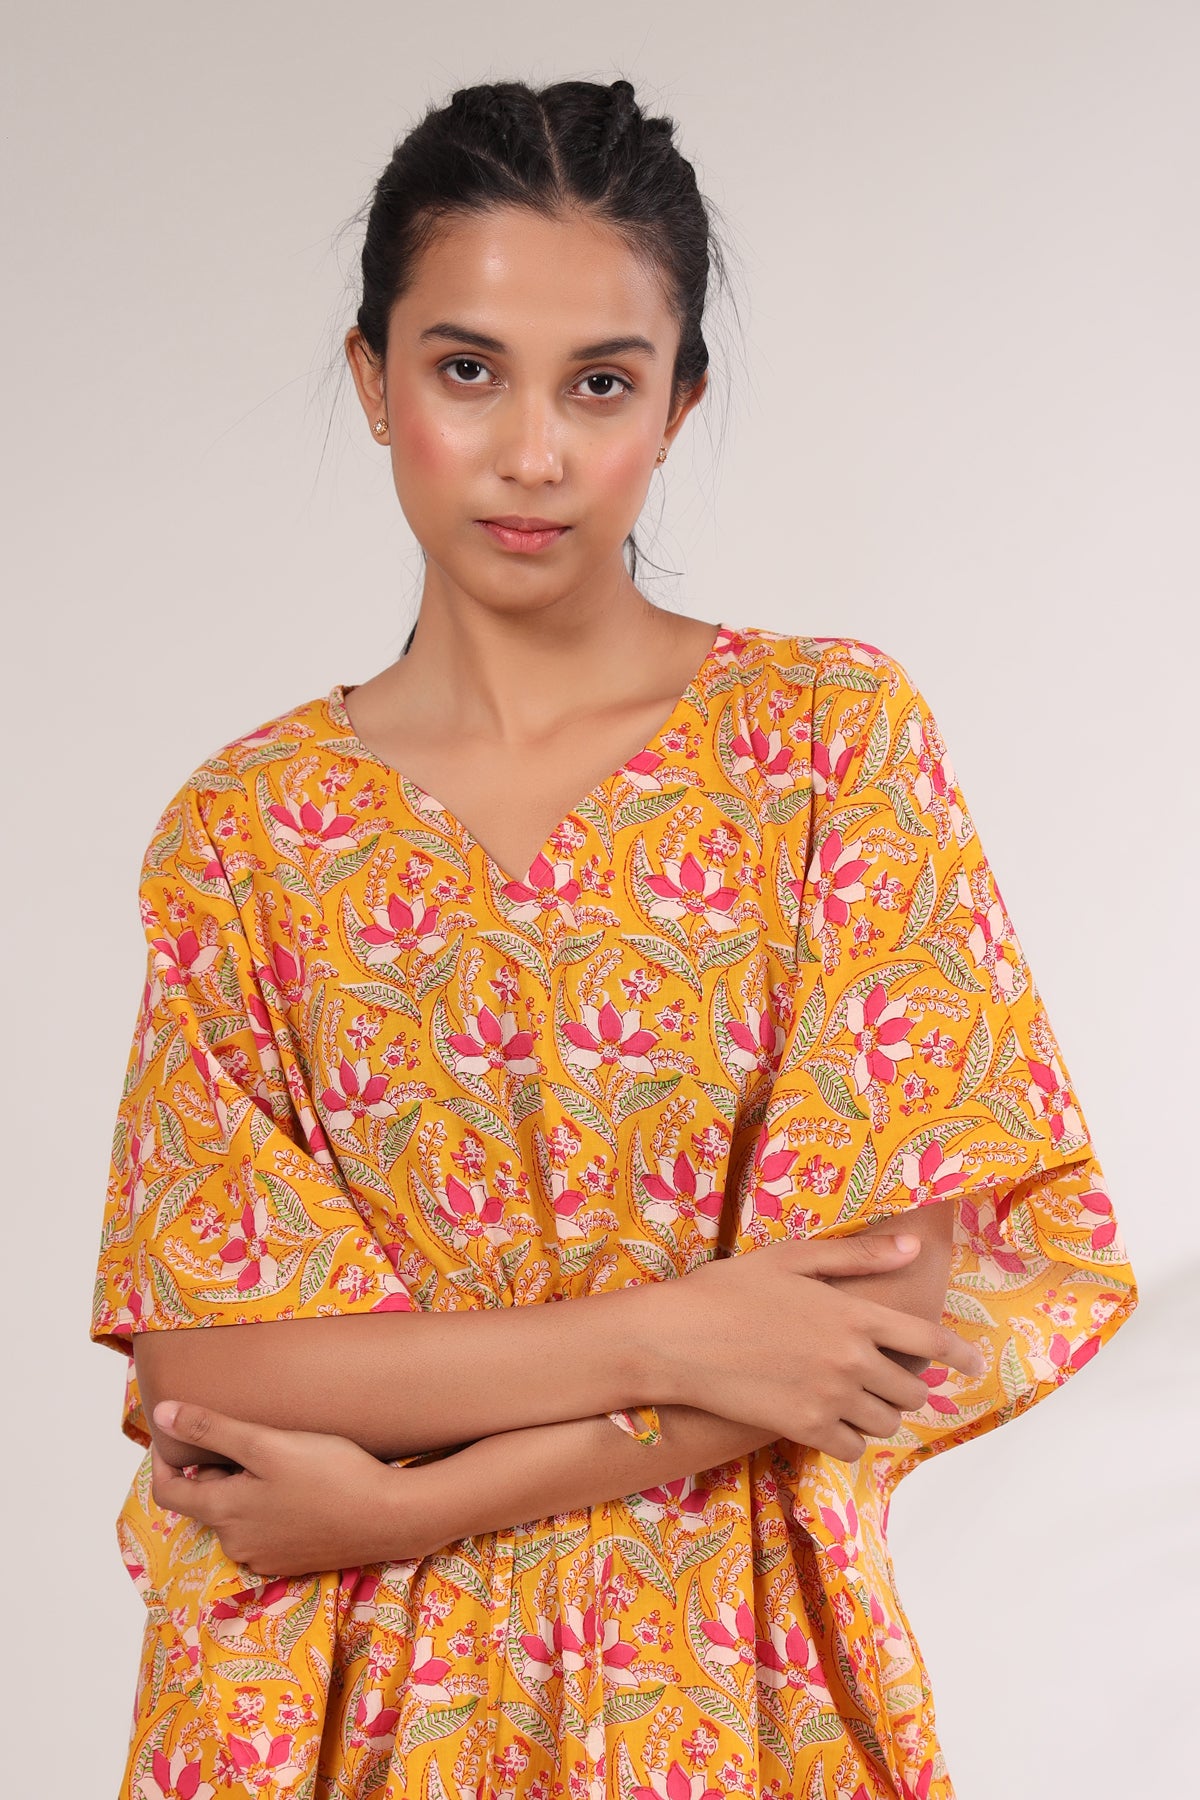 Bagru Batik Print on Mustard Kaftan Pajama